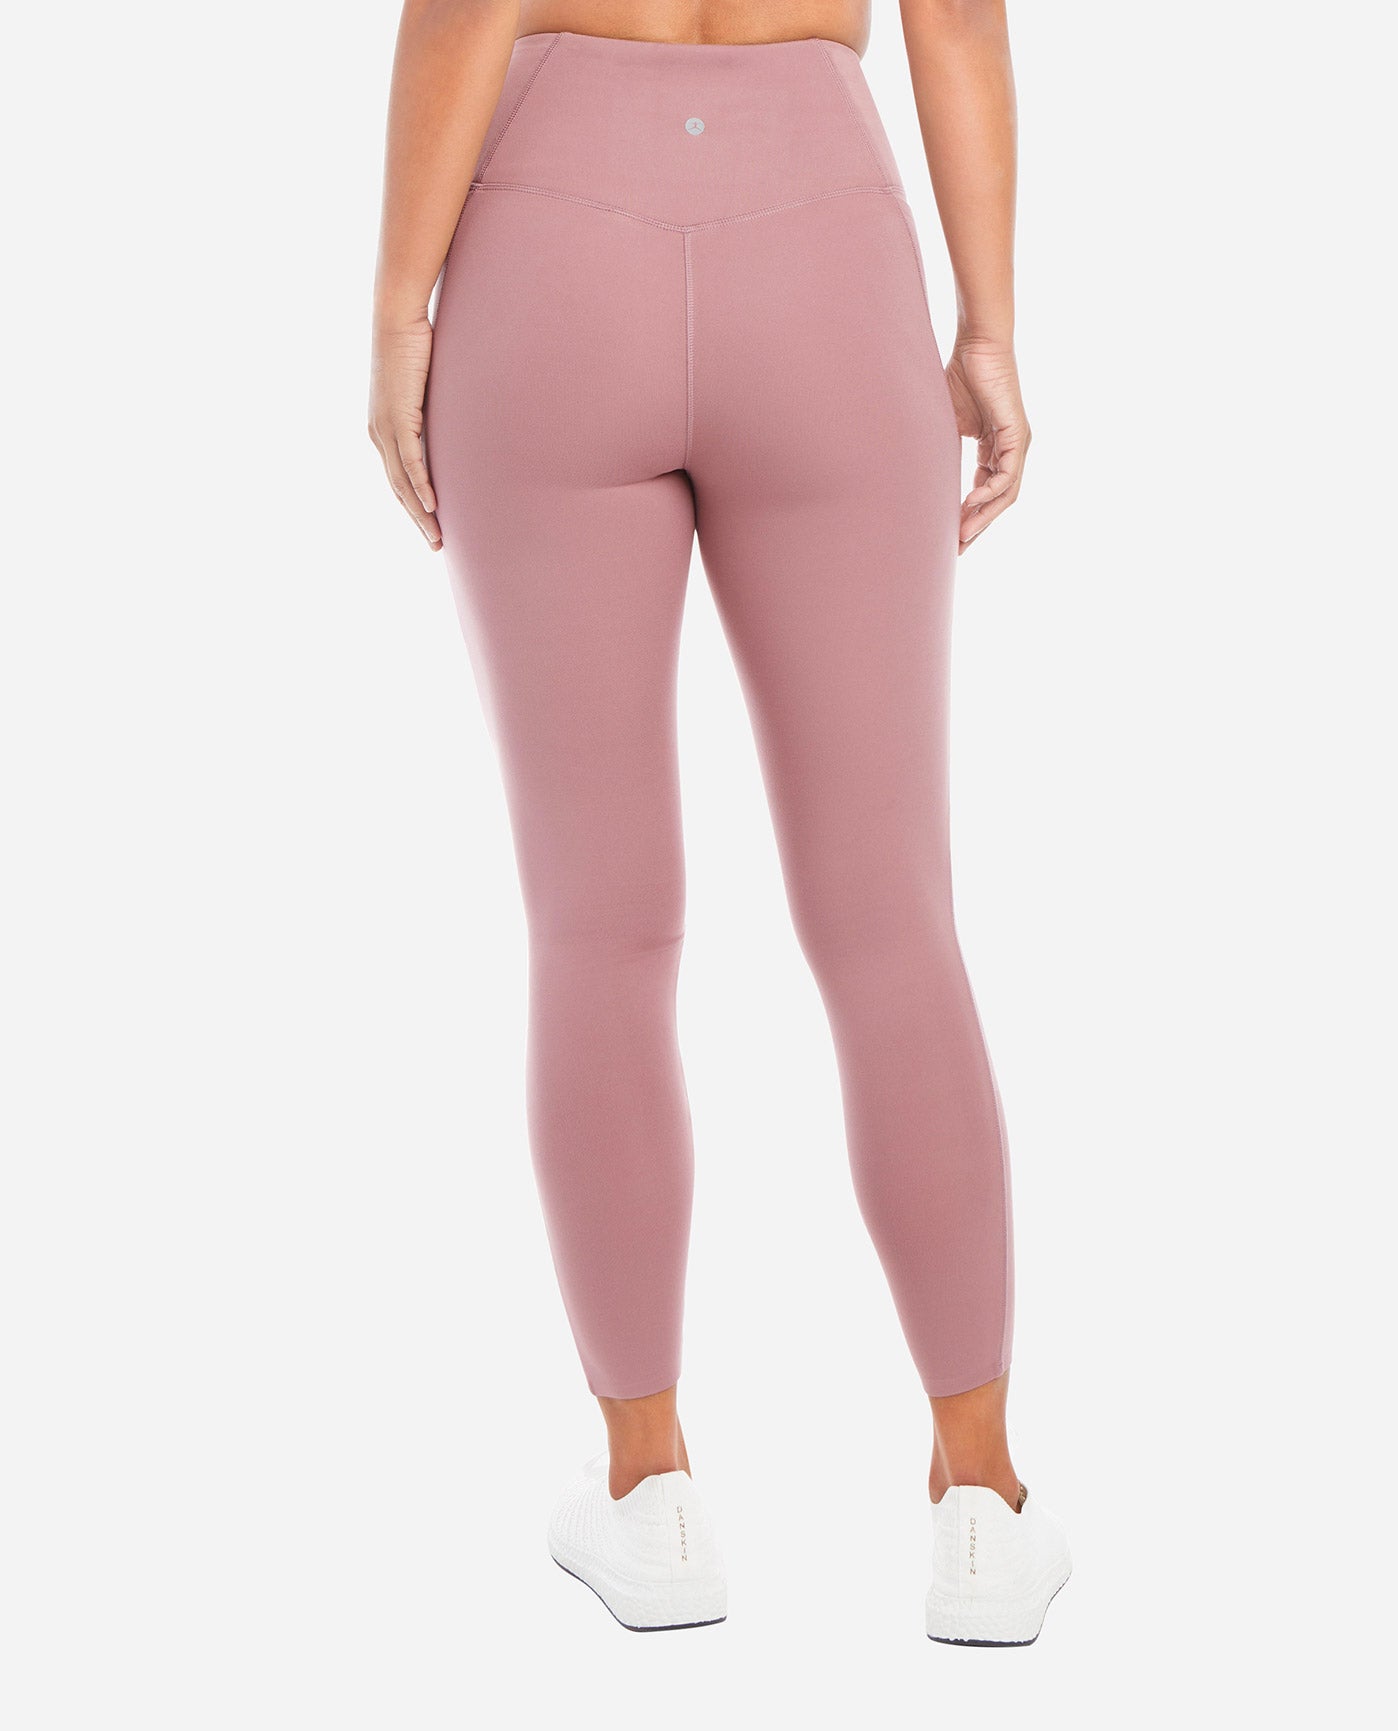 High Waisted Dark Pink Full Length Shaping Leggings Size Medium Pockets On  Side